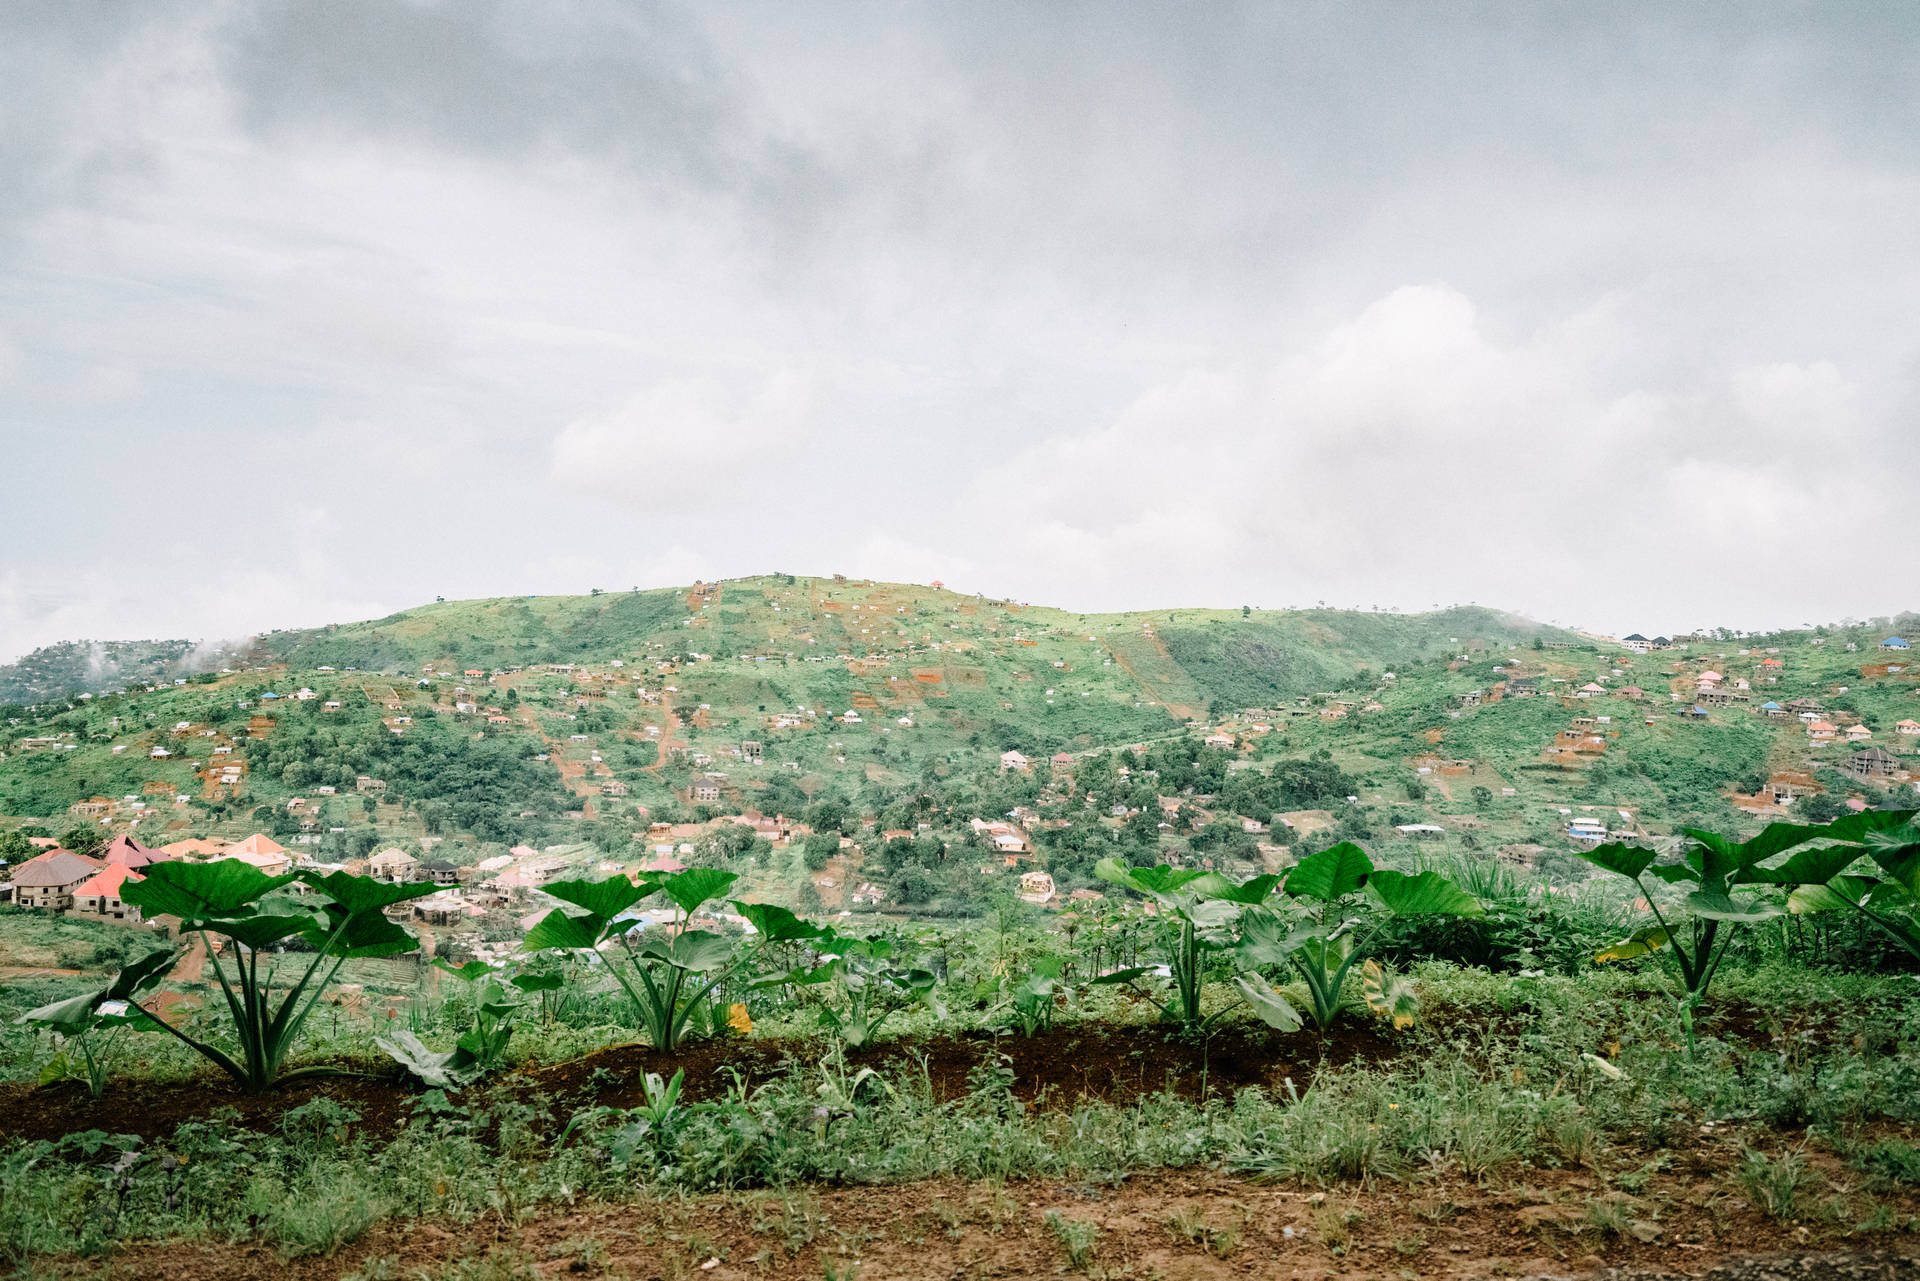 Grassy Green Hill In Sierra Leone